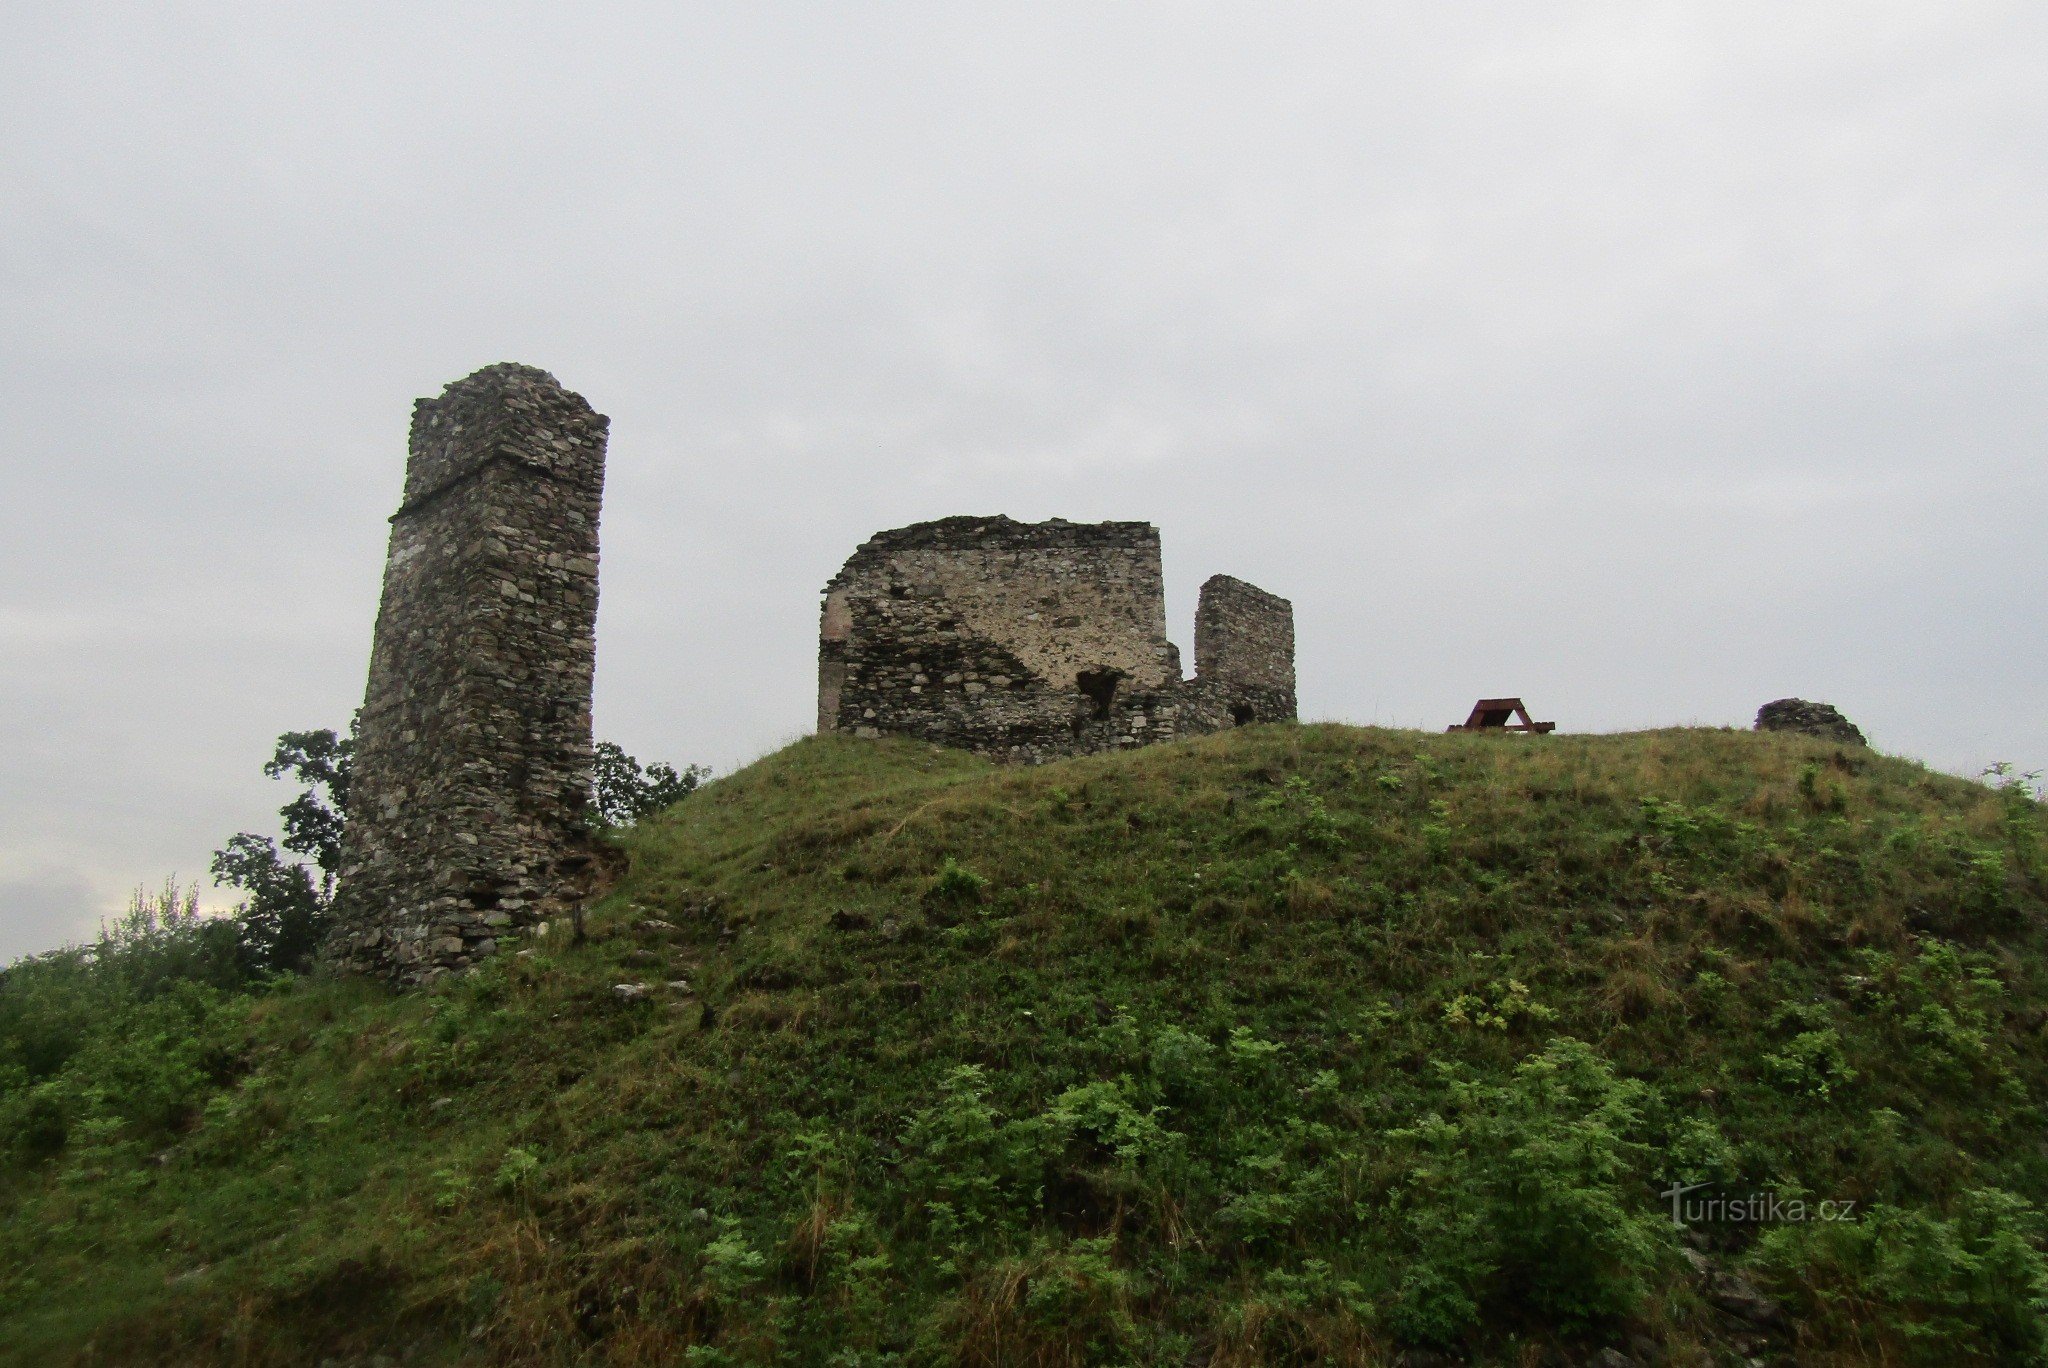 Ruinerna av Brníčko slott